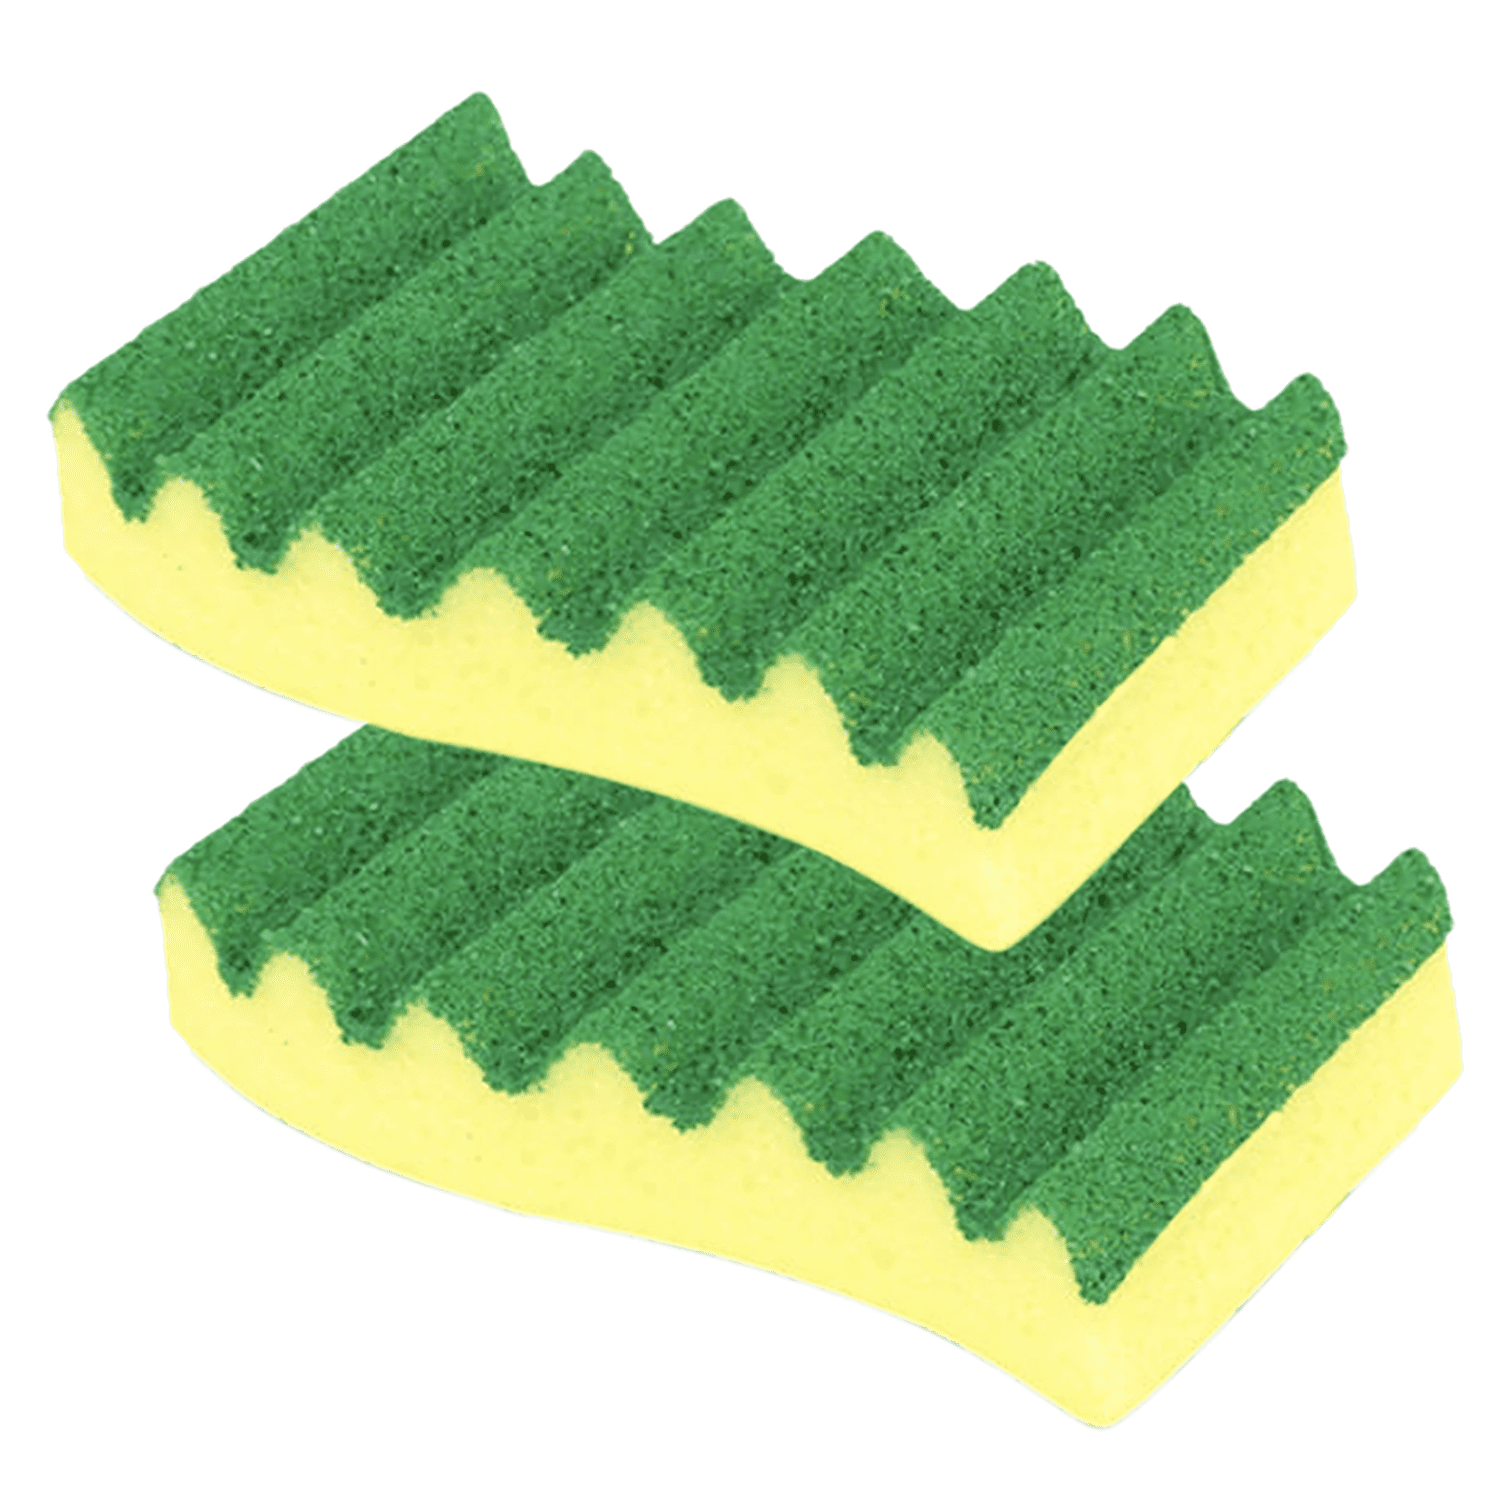 Brillo Estracell Sponge Cloth (6-Count Case of 6), Green